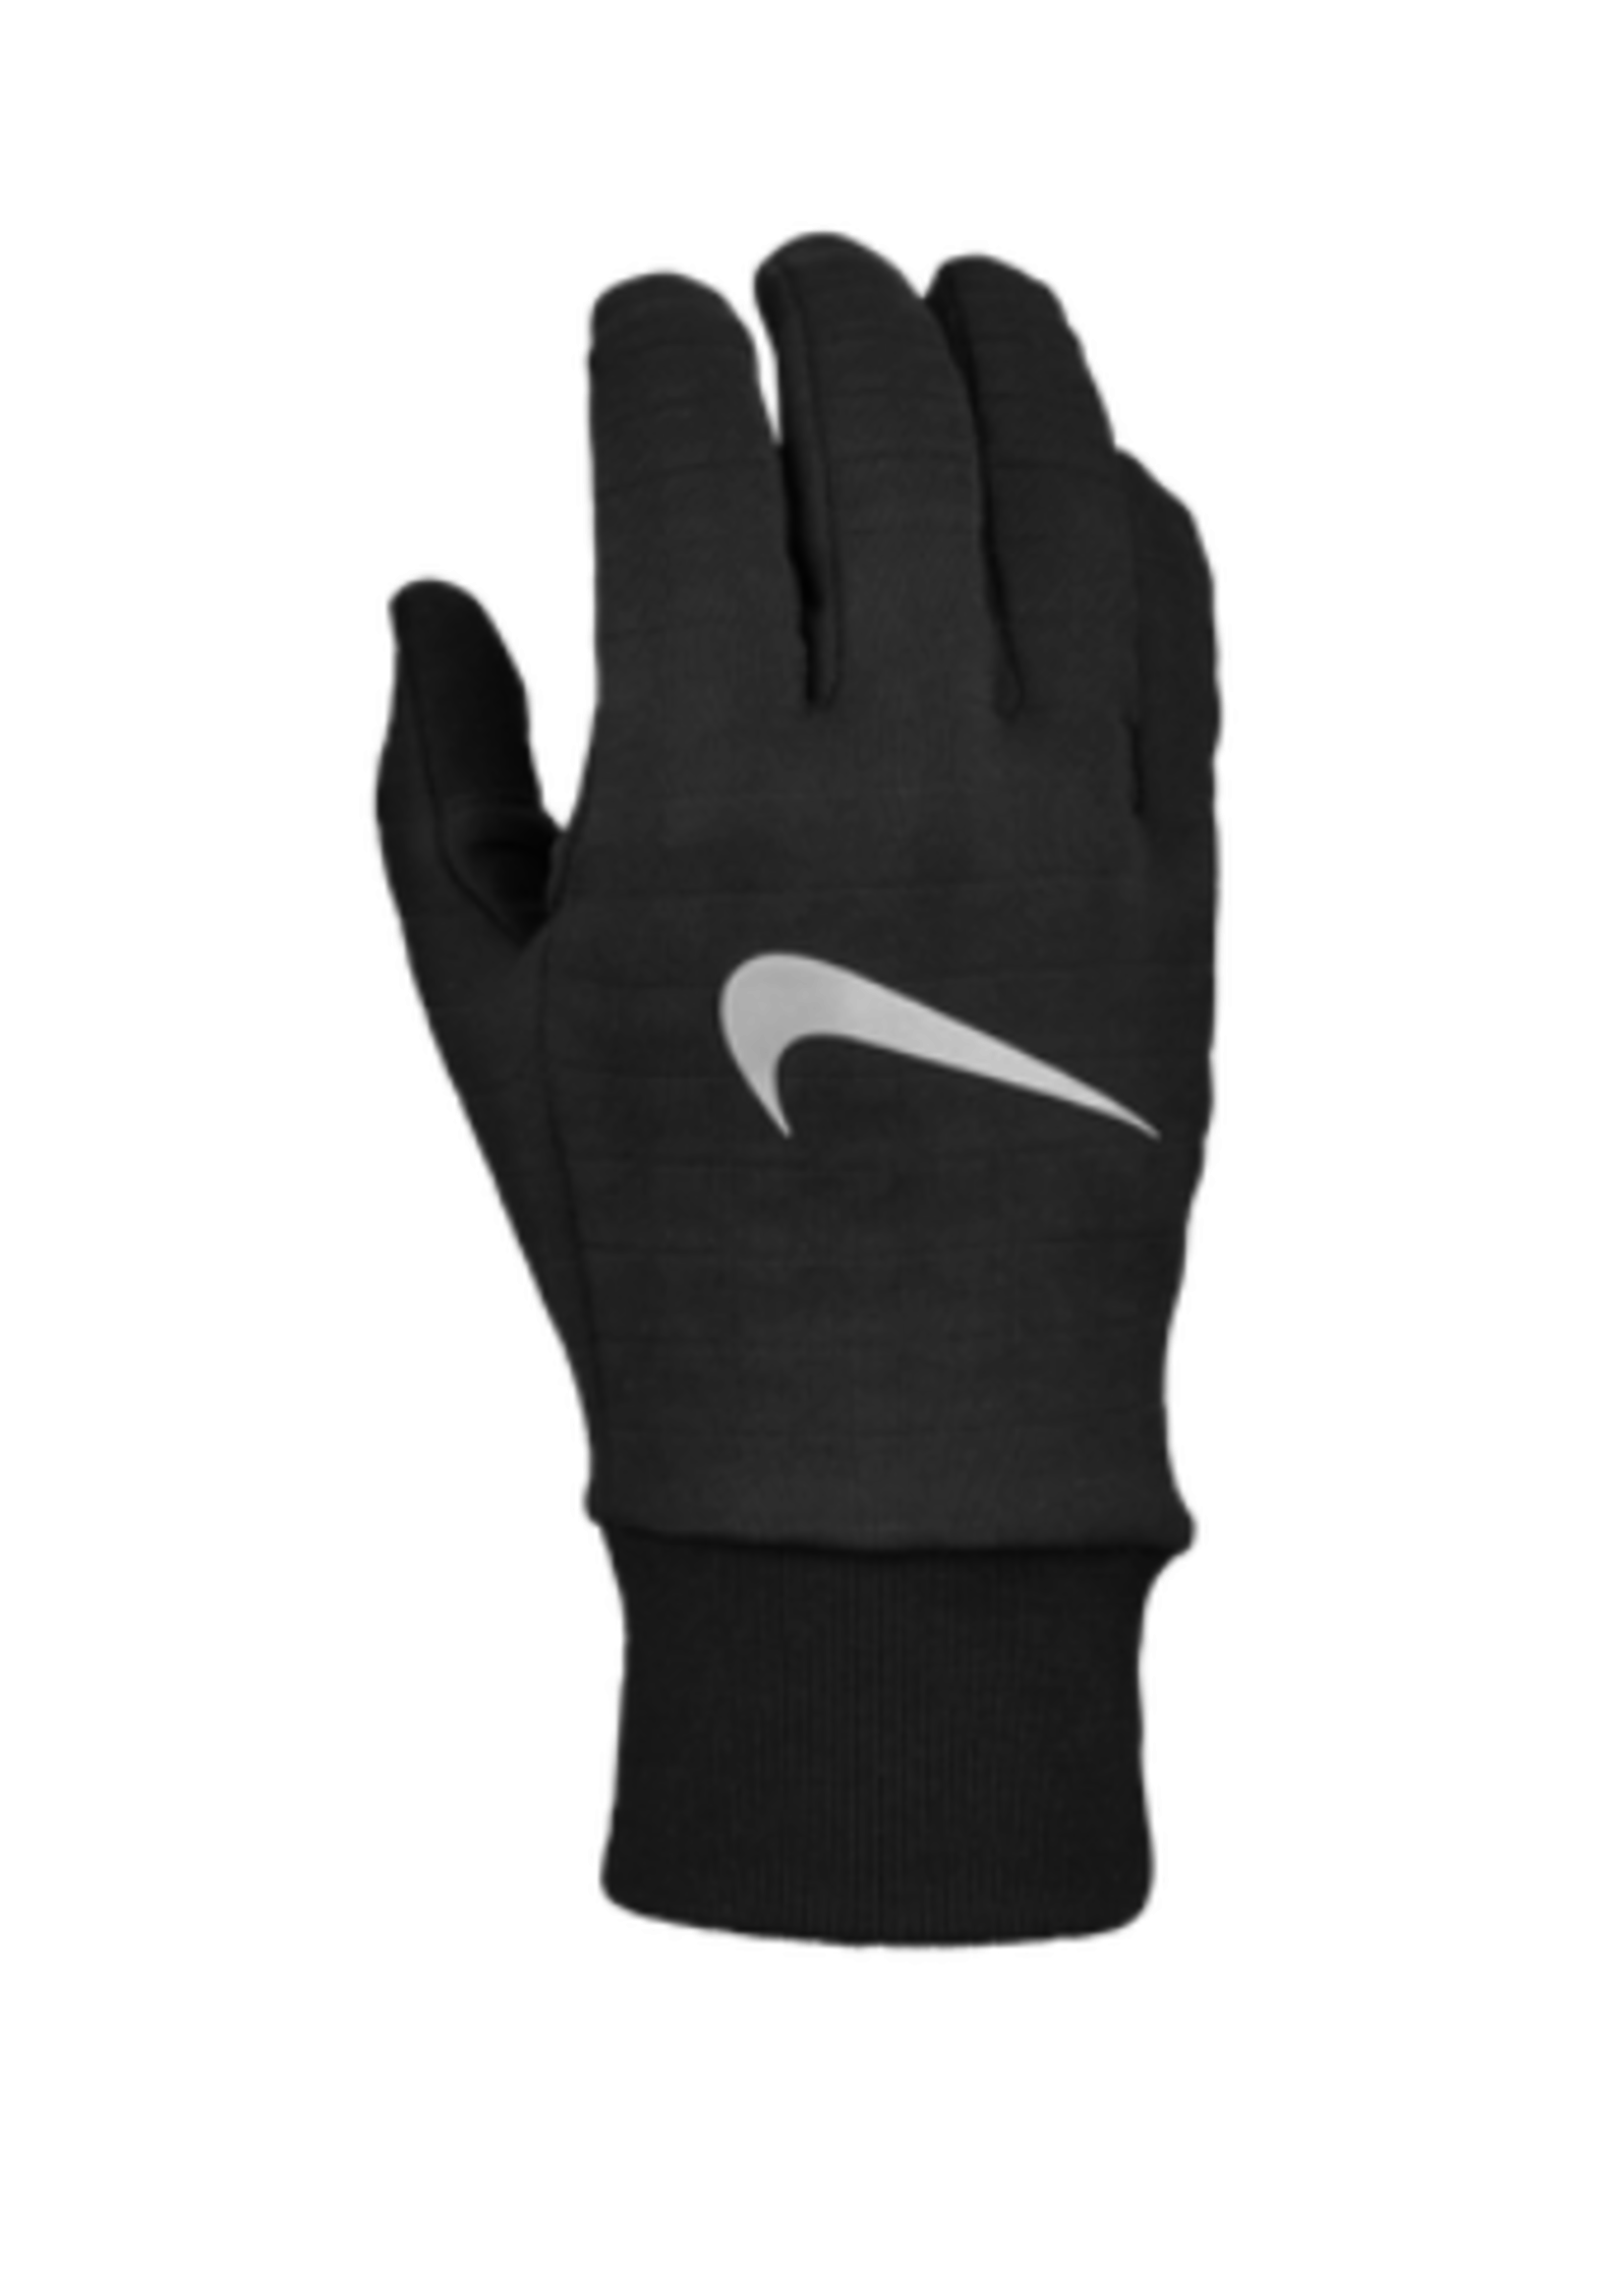 NON-UNIFORM Nike Sphere Running Gloves 3.0 - Men's